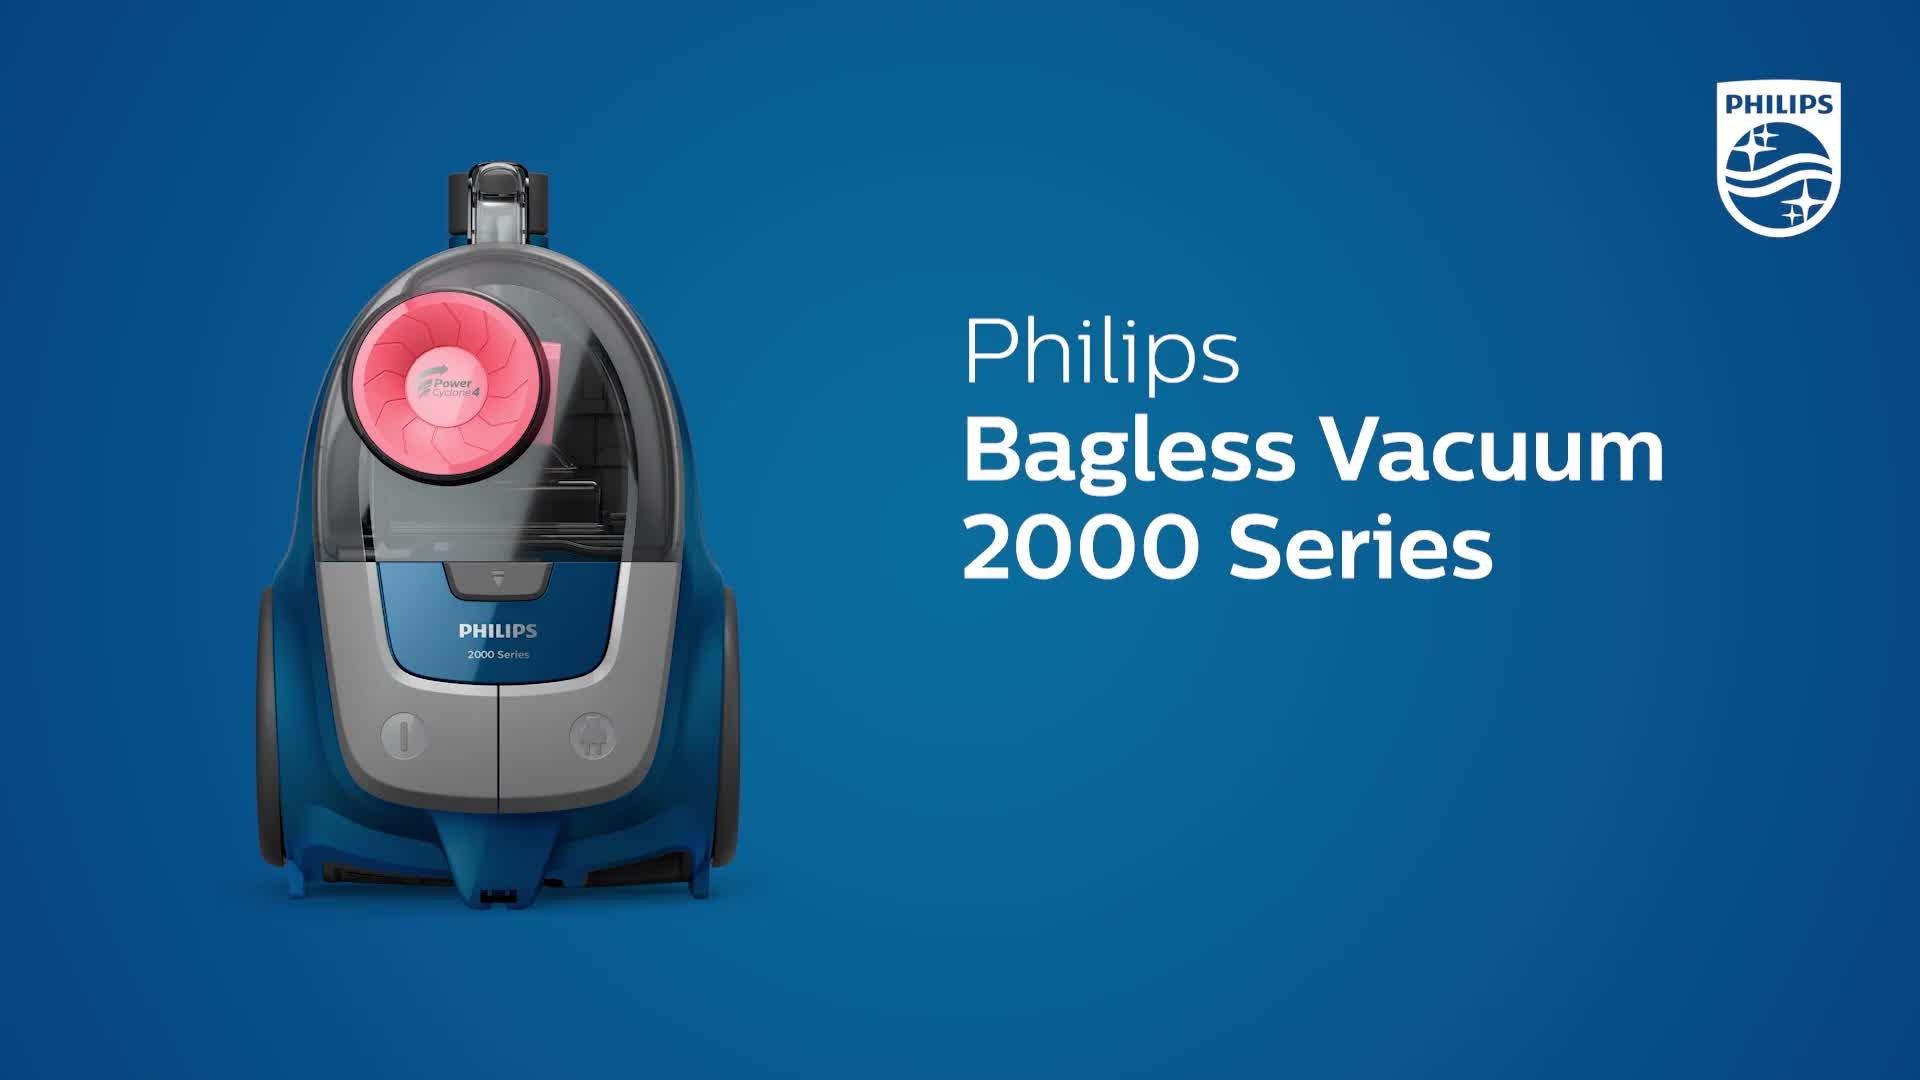 Philips 2000 series xb2042